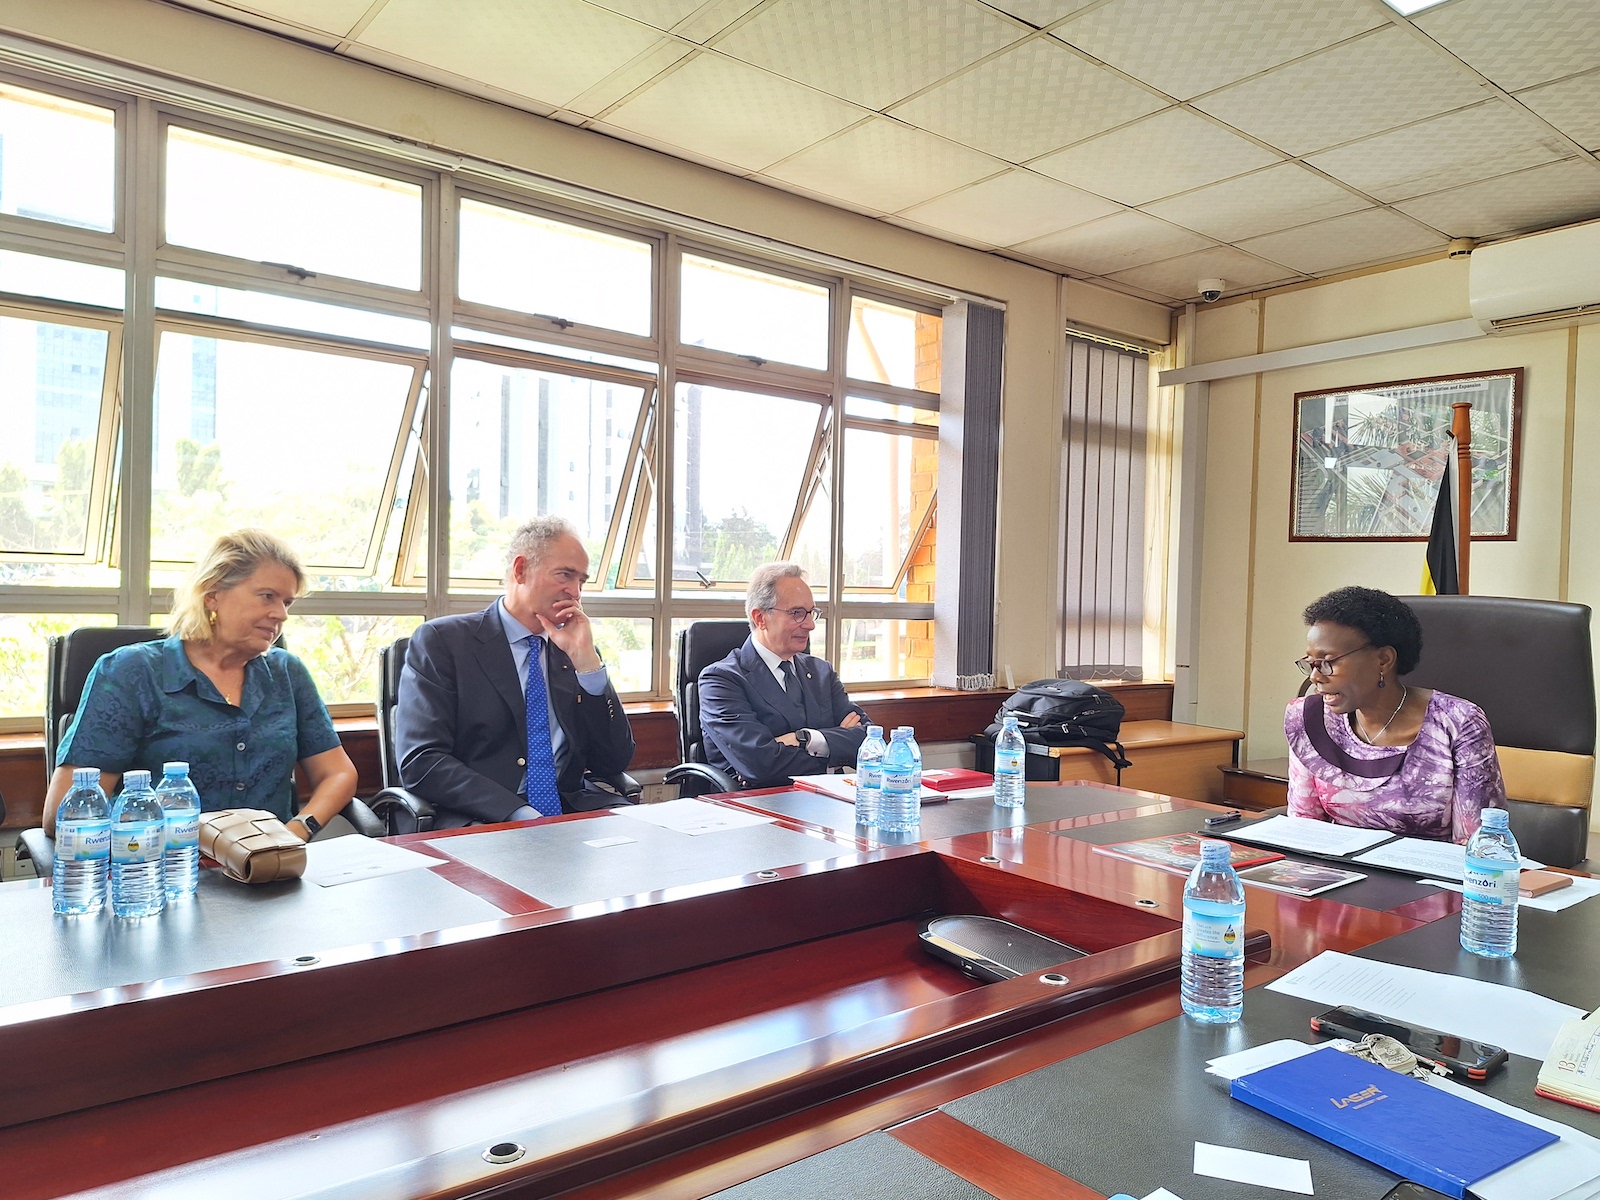 Visita ricca di incontri e prospettive per le attività dell’Ordine di Malta in Uganda e Sud Sudan